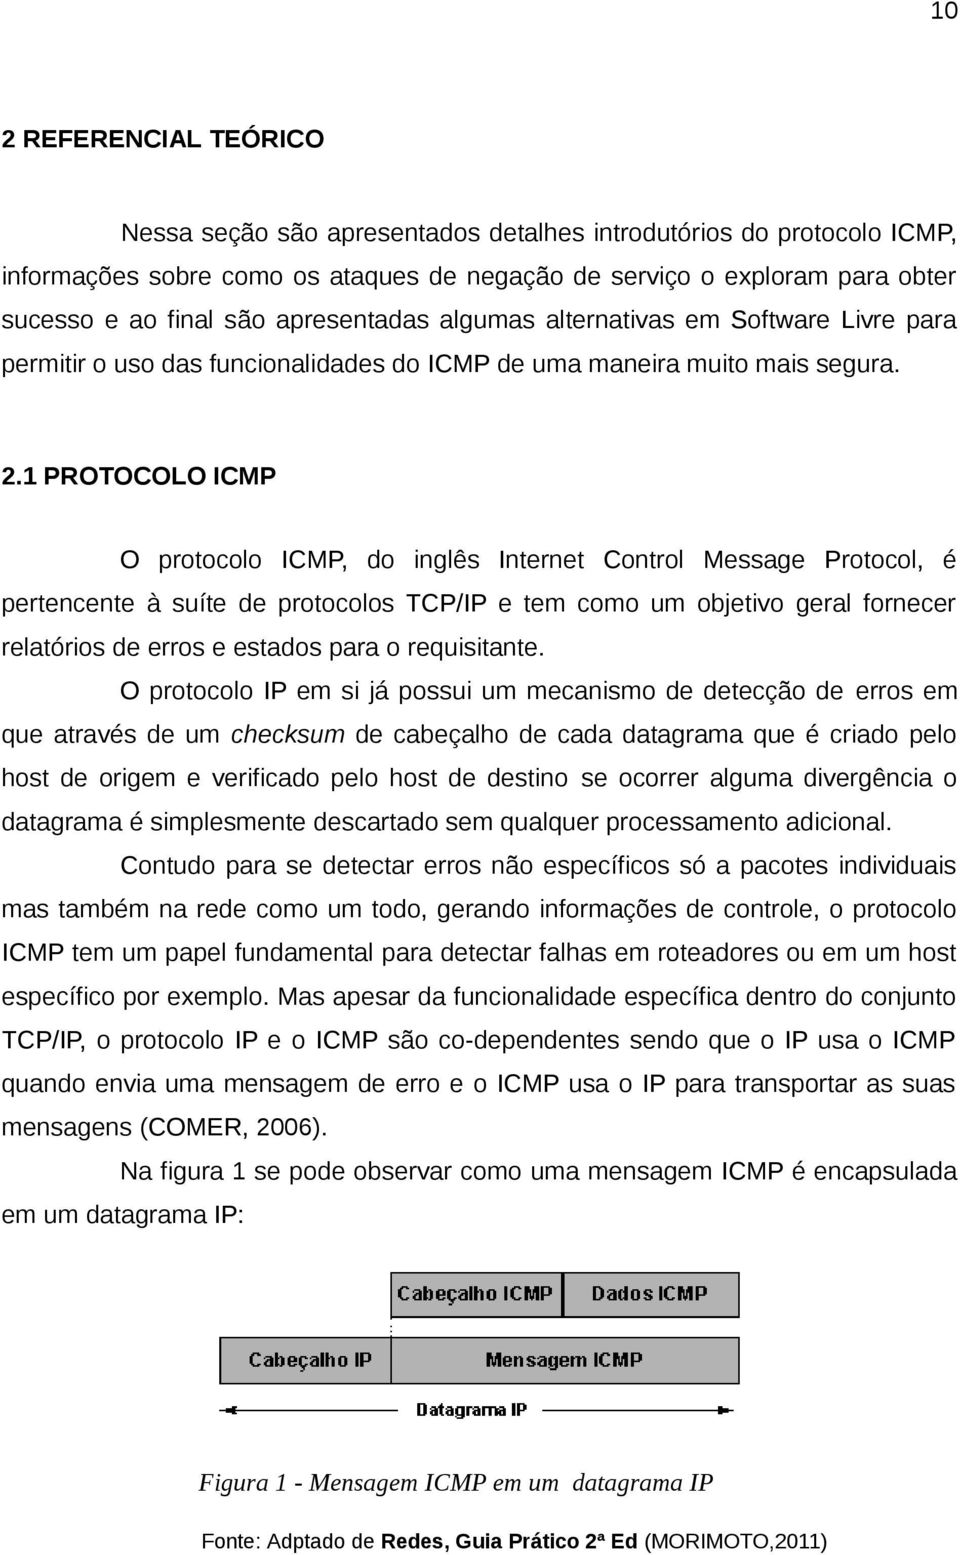 1 PROTOCOLO ICMP O protocolo ICMP, do inglês Internet Control Message Protocol, é pertencente à suíte de protocolos TCP/IP e tem como um objetivo geral fornecer relatórios de erros e estados para o